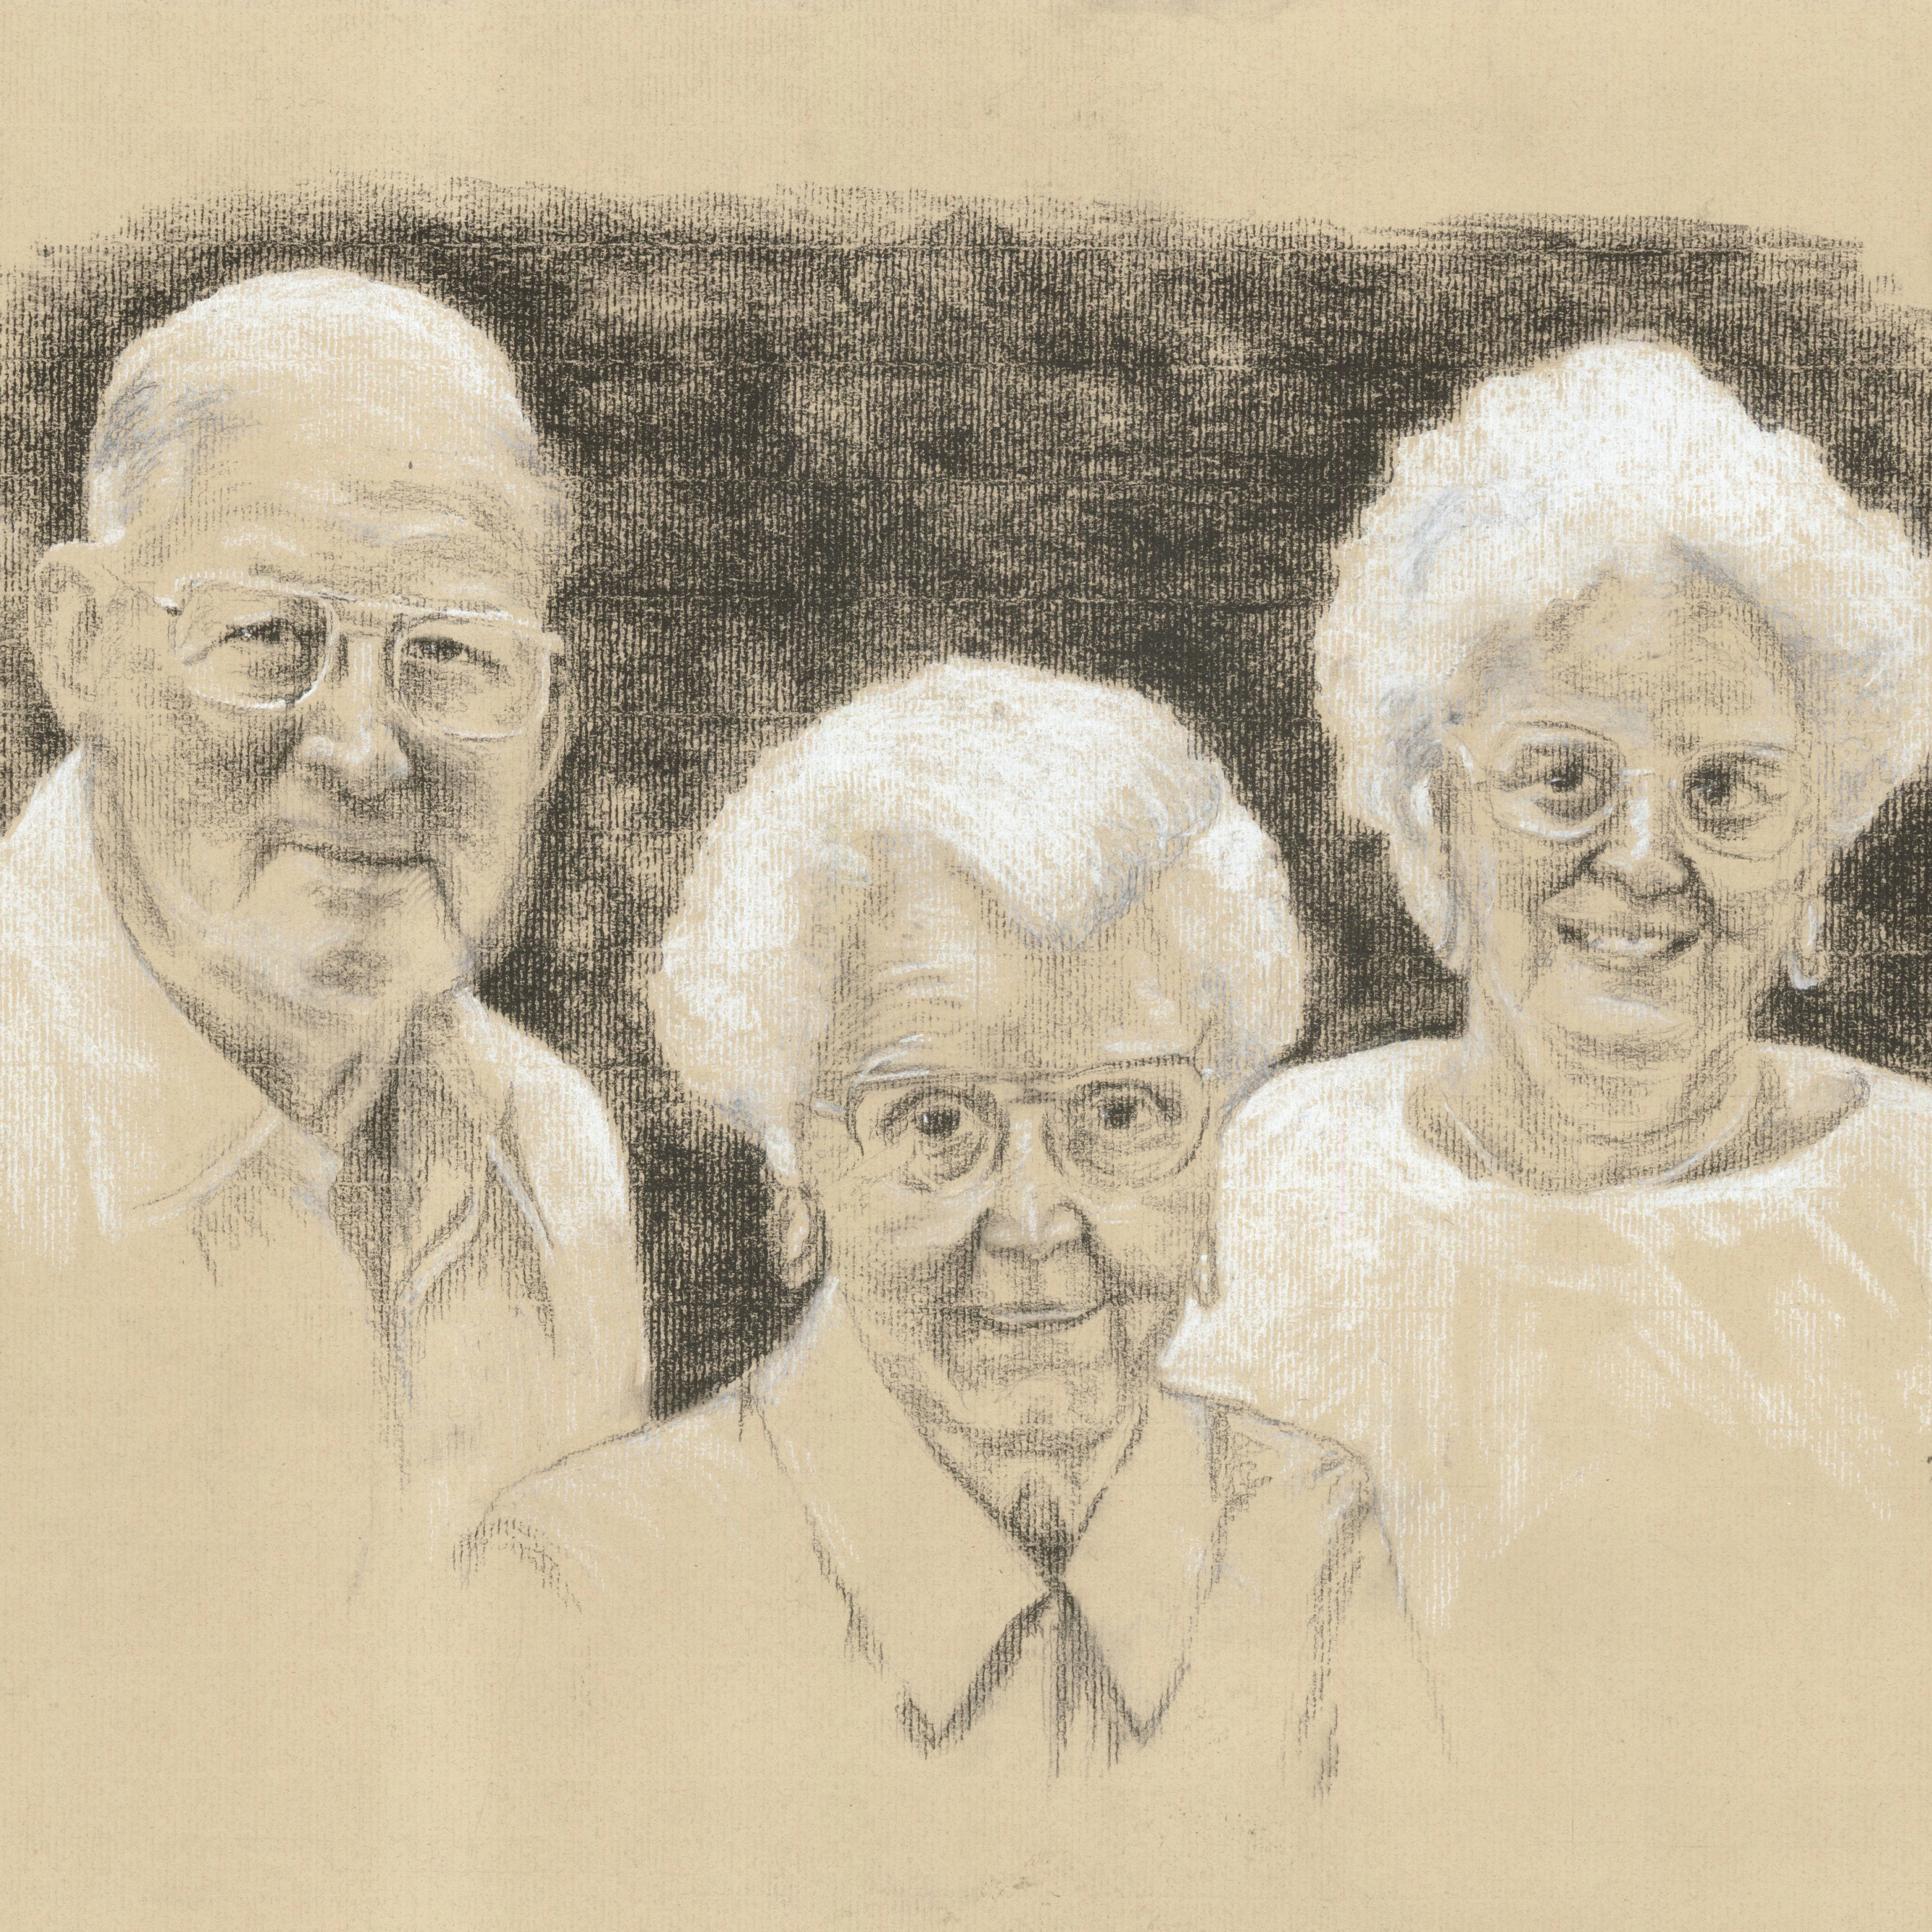 Melvin H., Doris A., and Fovette E. Dush Gold Key Scholarship